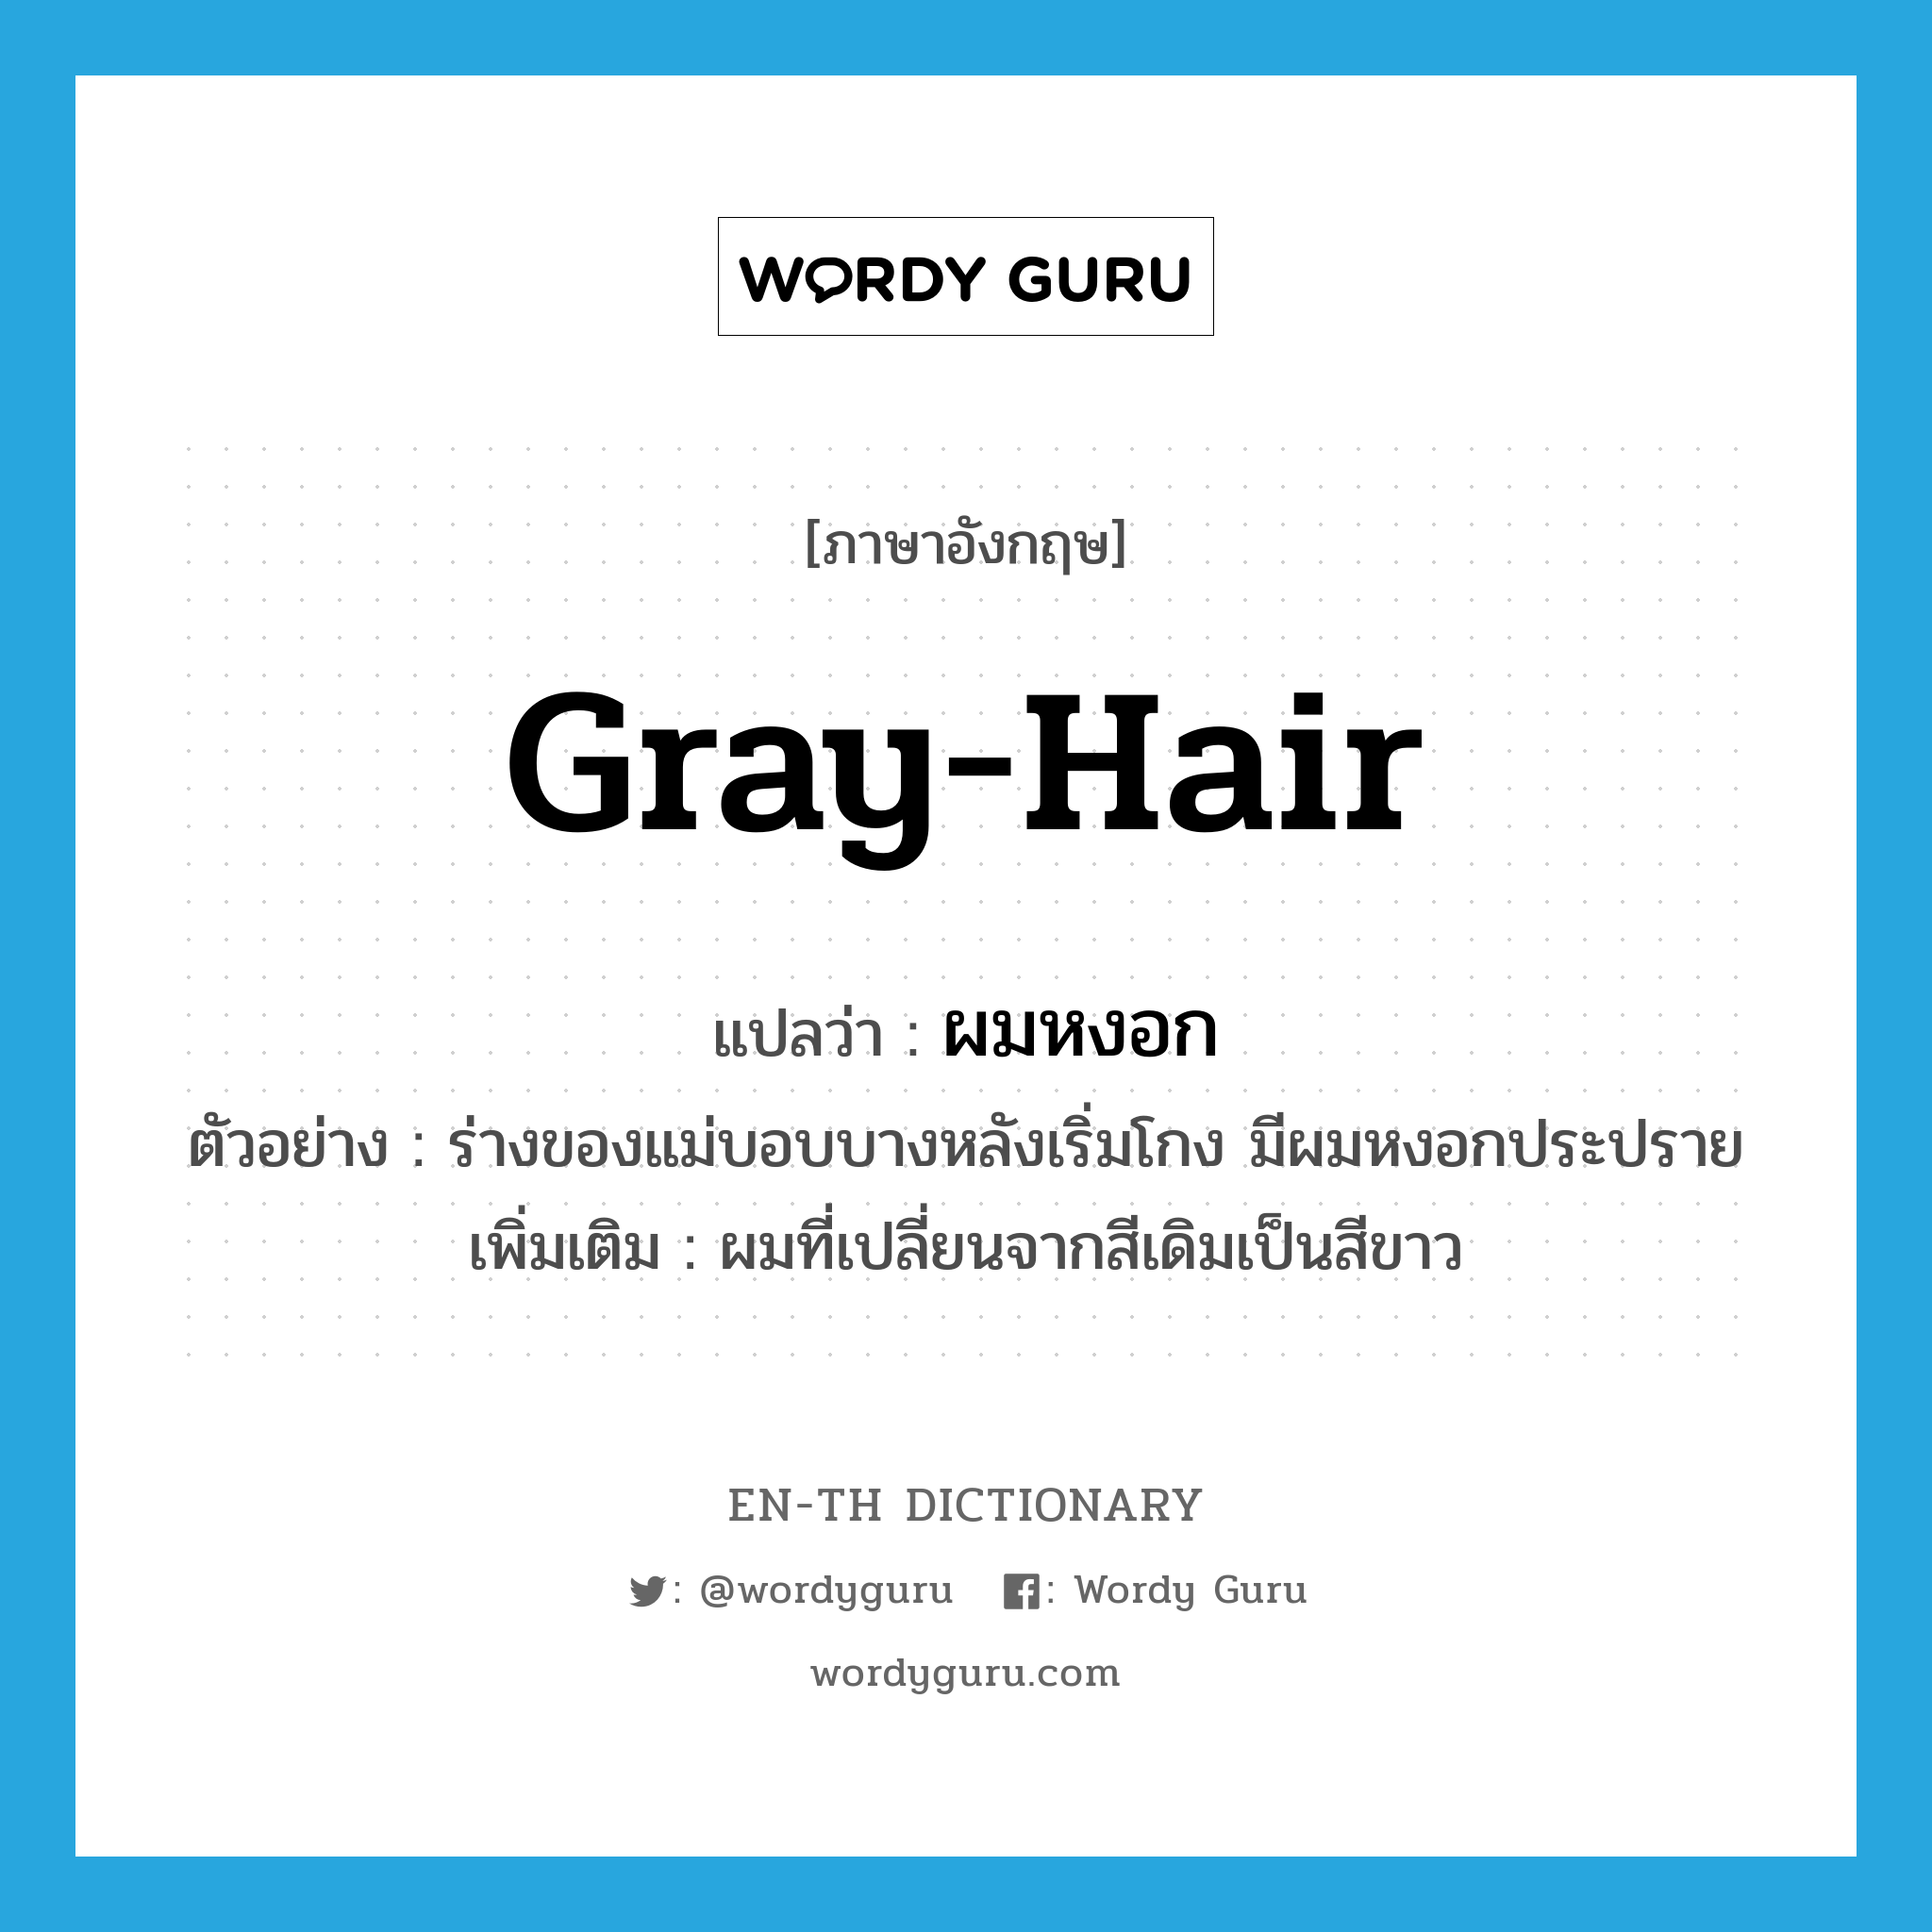 gray-hair แปลว่า?, คำศัพท์ภาษาอังกฤษ gray-hair แปลว่า ผมหงอก ประเภท N ตัวอย่าง ร่างของแม่บอบบางหลังเริ่มโกง มีผมหงอกประปราย เพิ่มเติม ผมที่เปลี่ยนจากสีเดิมเป็นสีขาว หมวด N